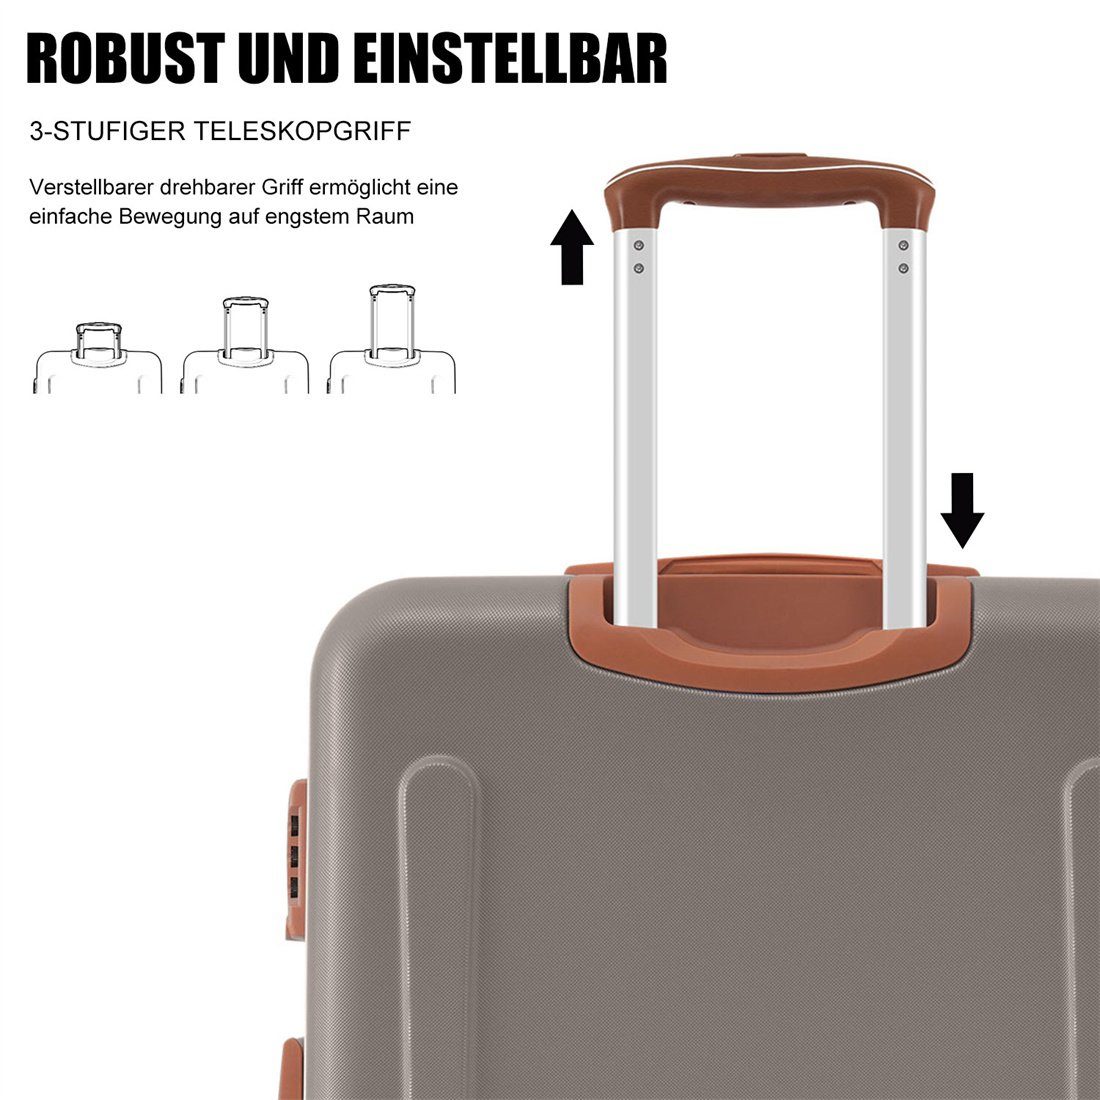 Hartschalen-Koffer, Koffer DÖRÖY braun Reisekoffer, Rollkoffer, ABS-Material,